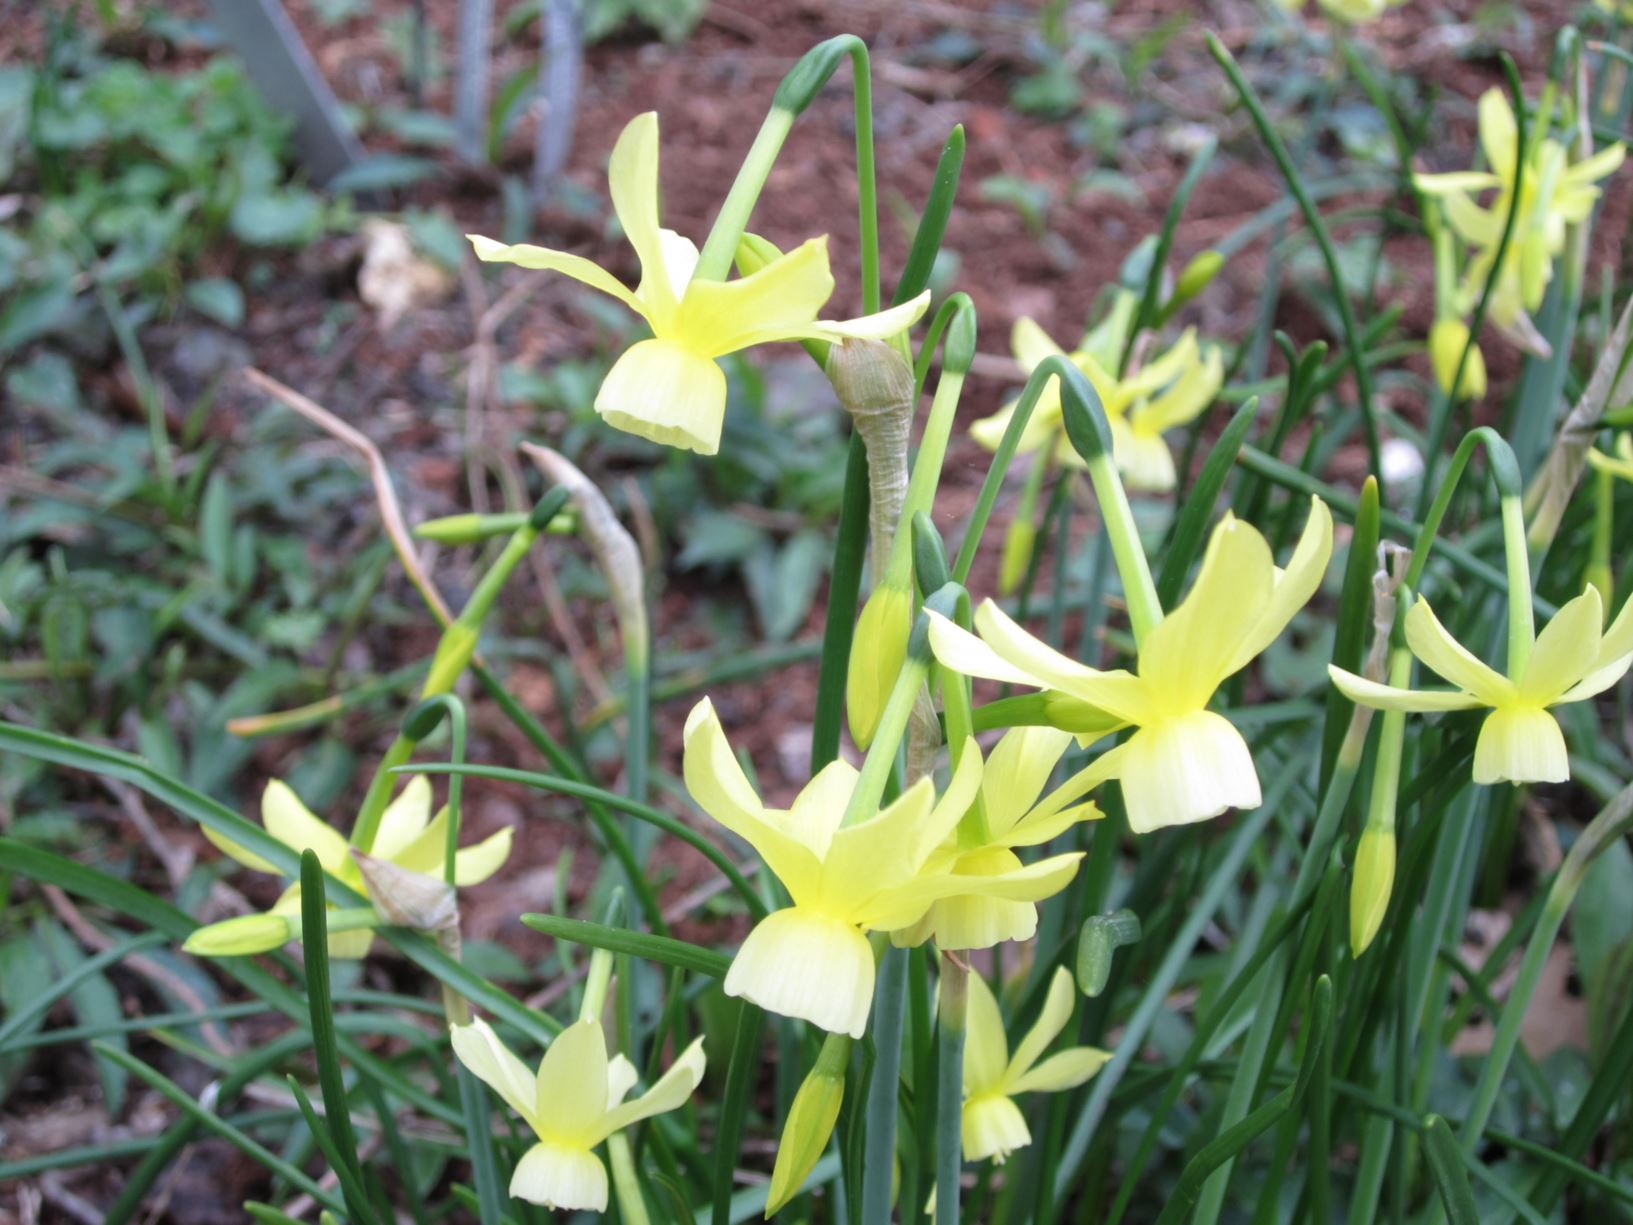 Narcissus 'Hawera' - triandrus daffodil